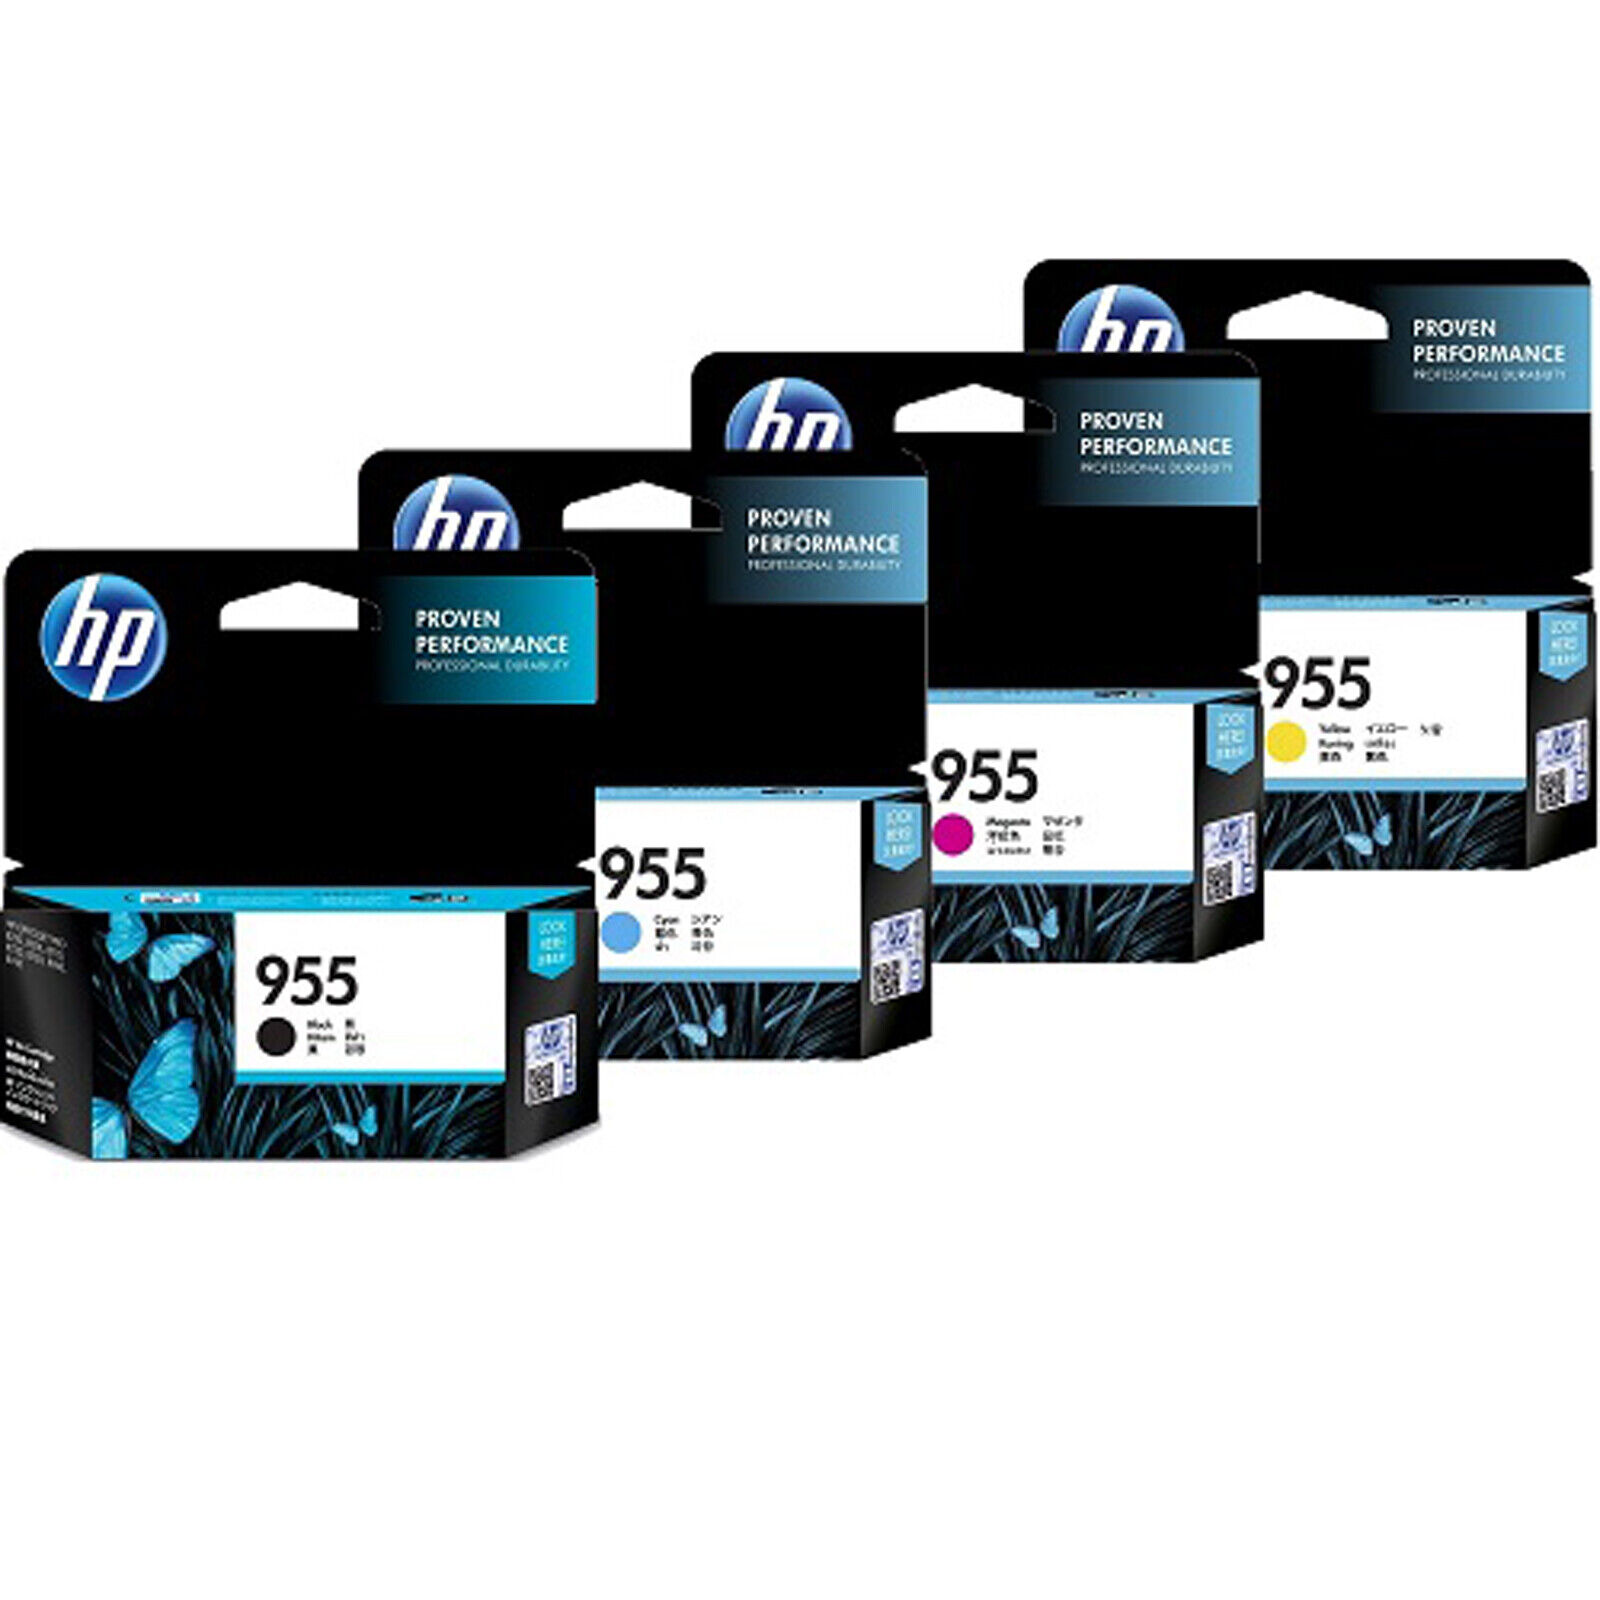 HP Officejet Pro 8710, 8720, 8730